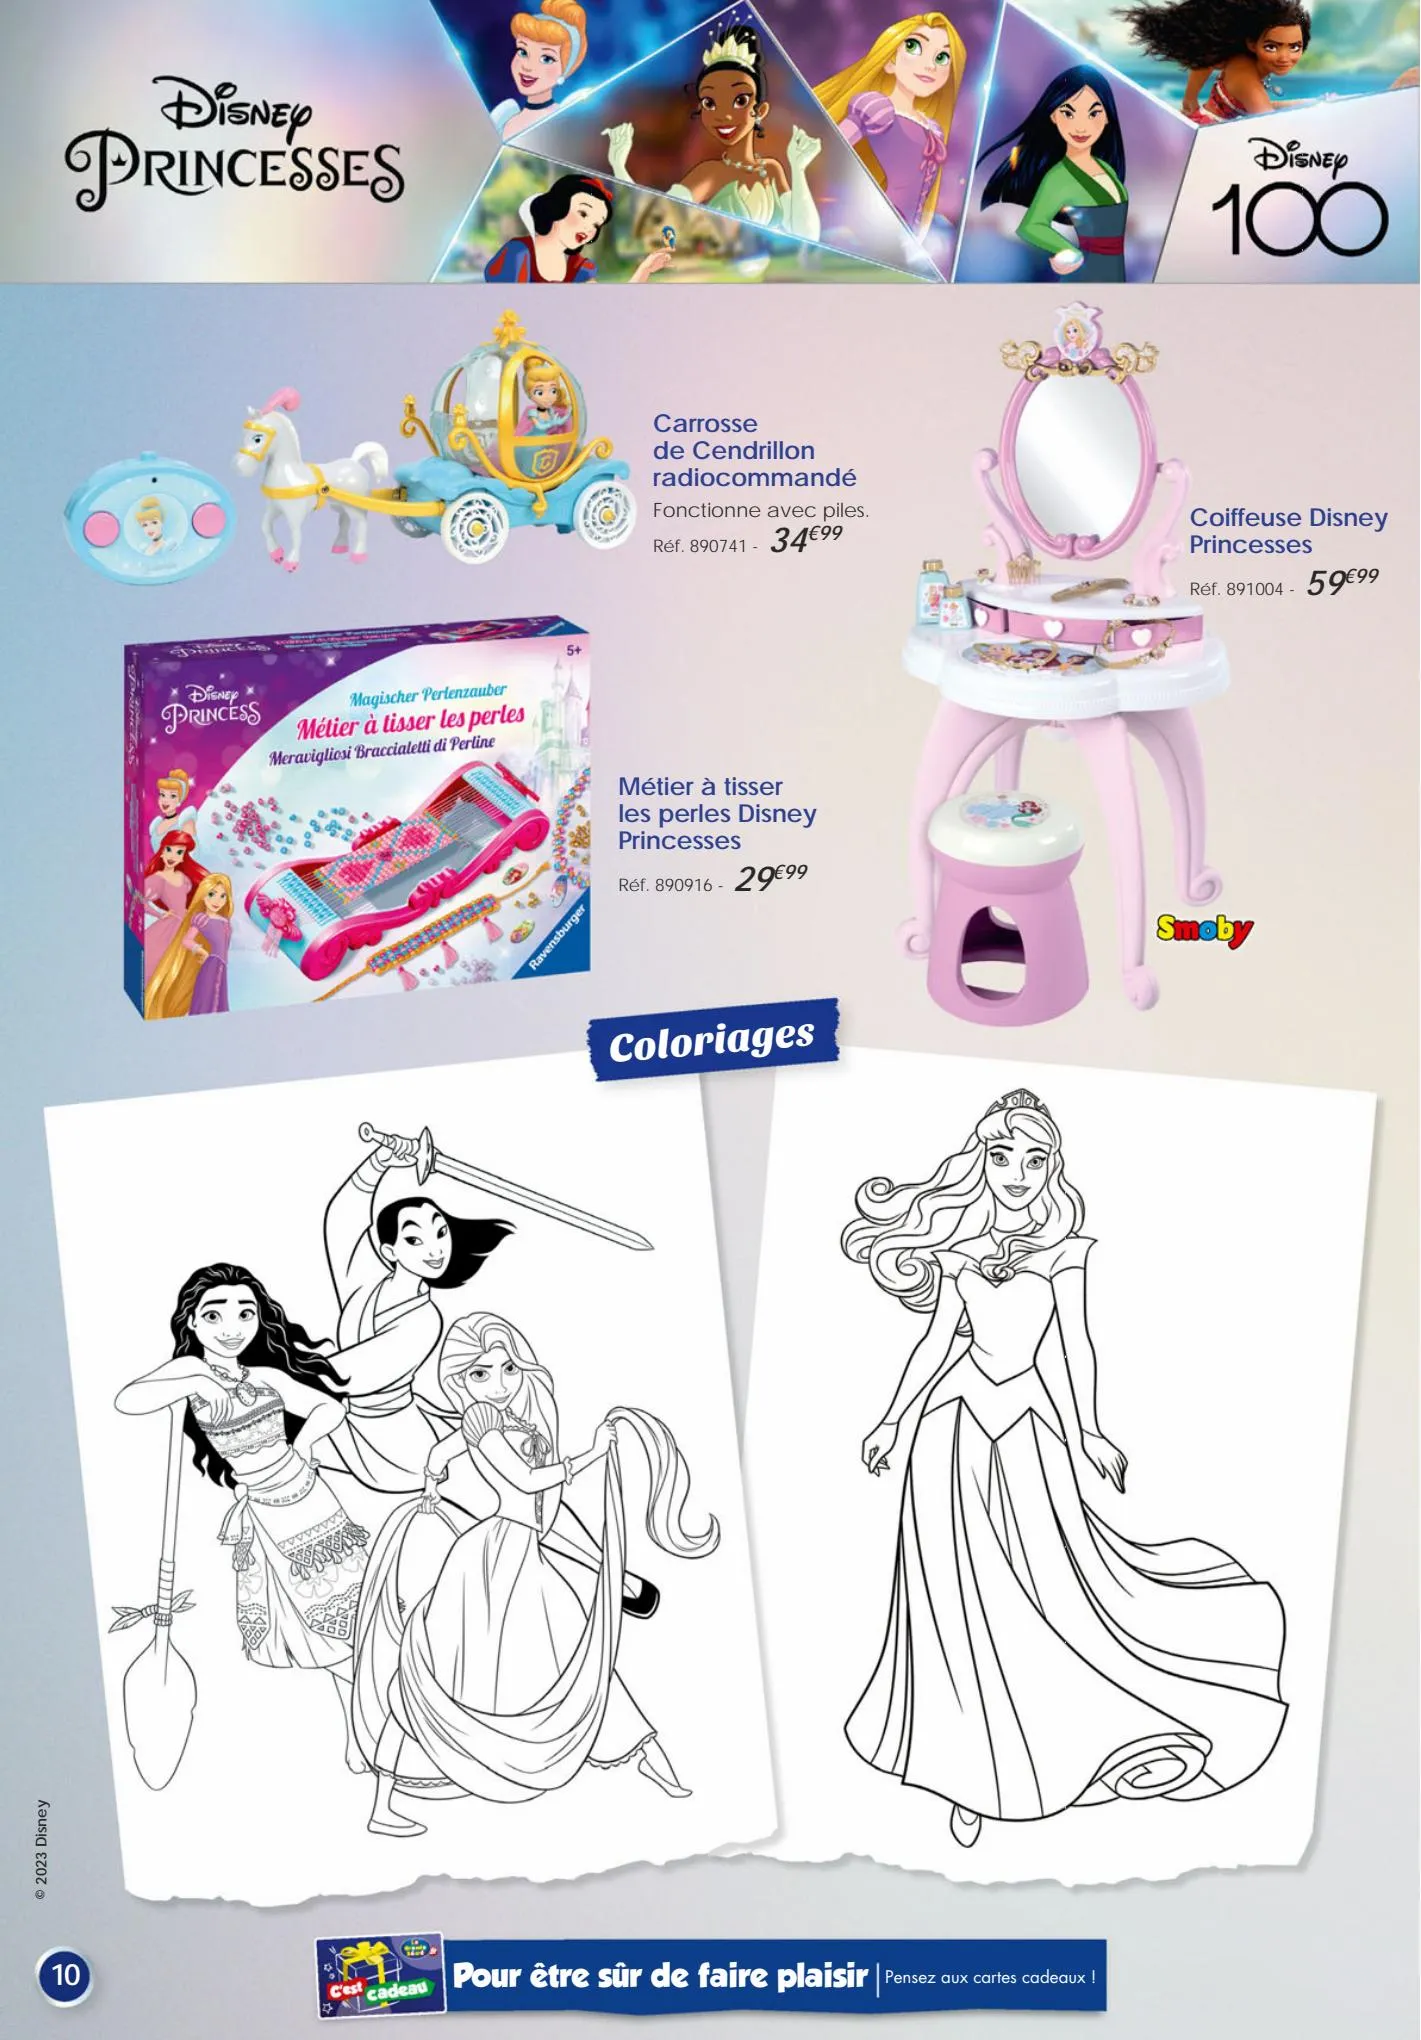 Catalogue Edition speciale Disney 100, page 00010